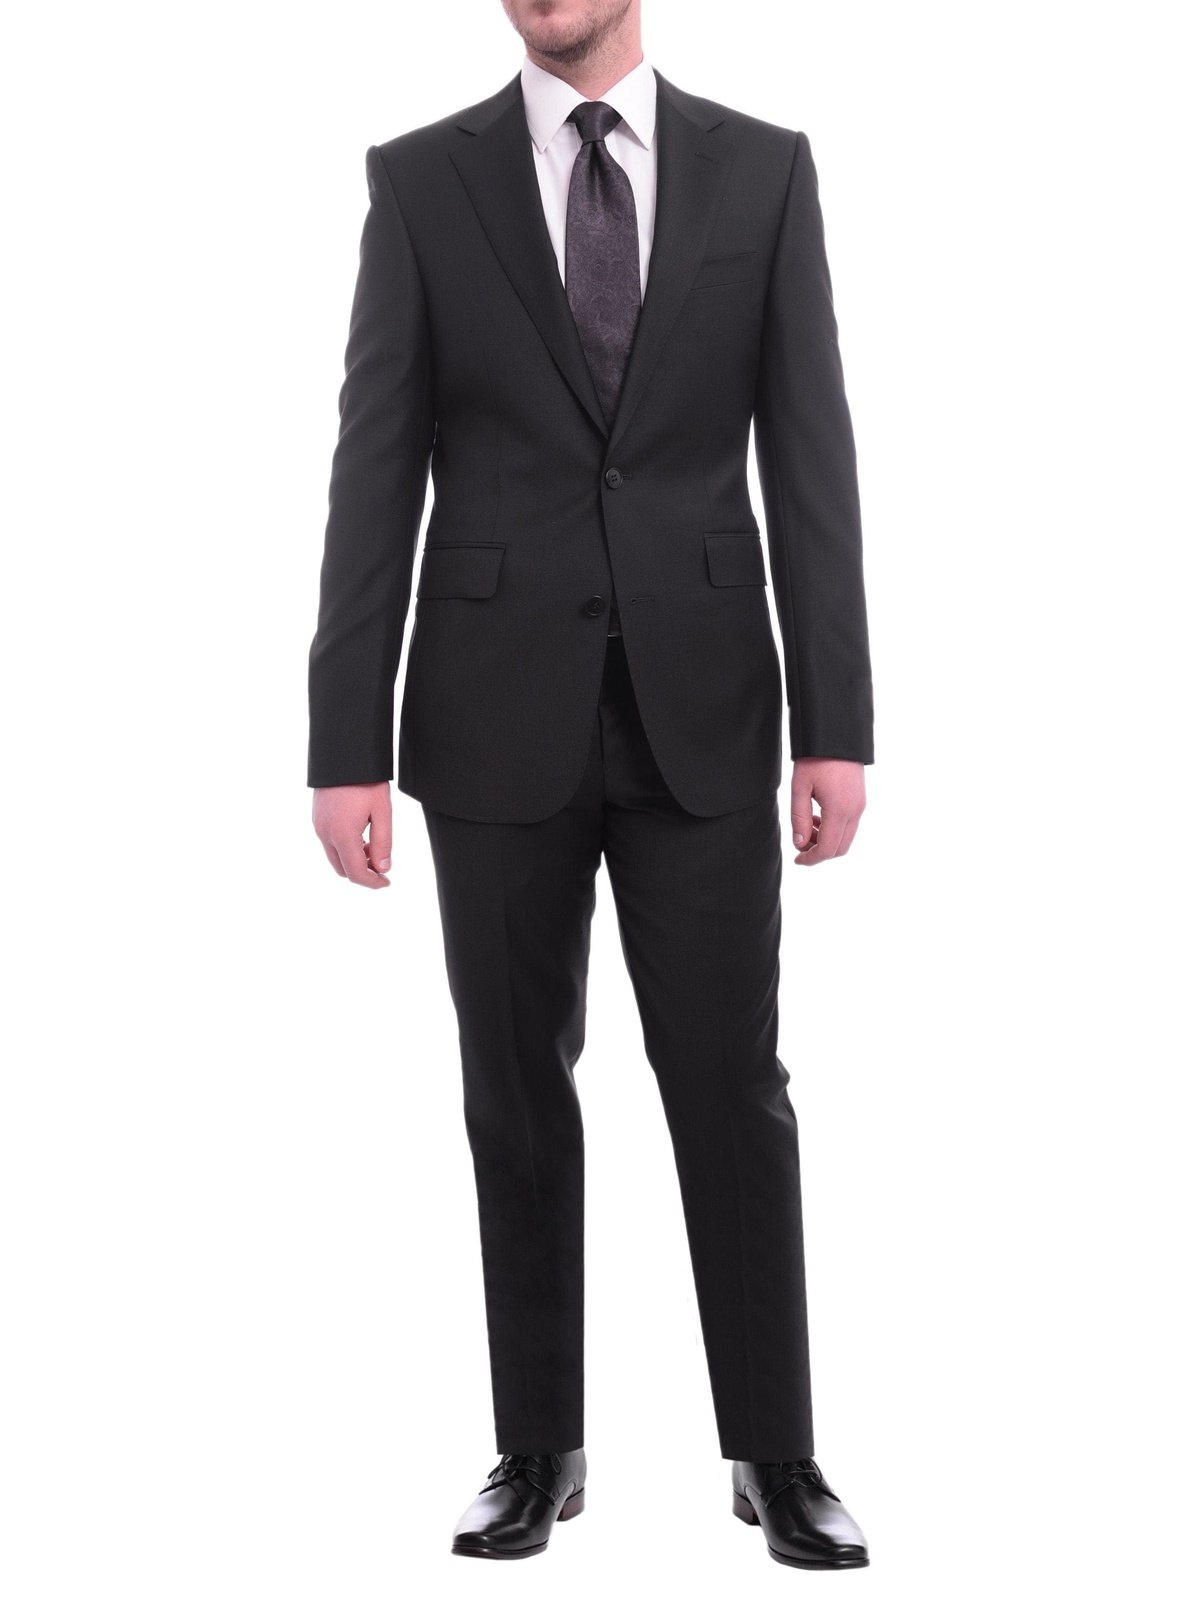 Luxury Suits | The Suit Depot